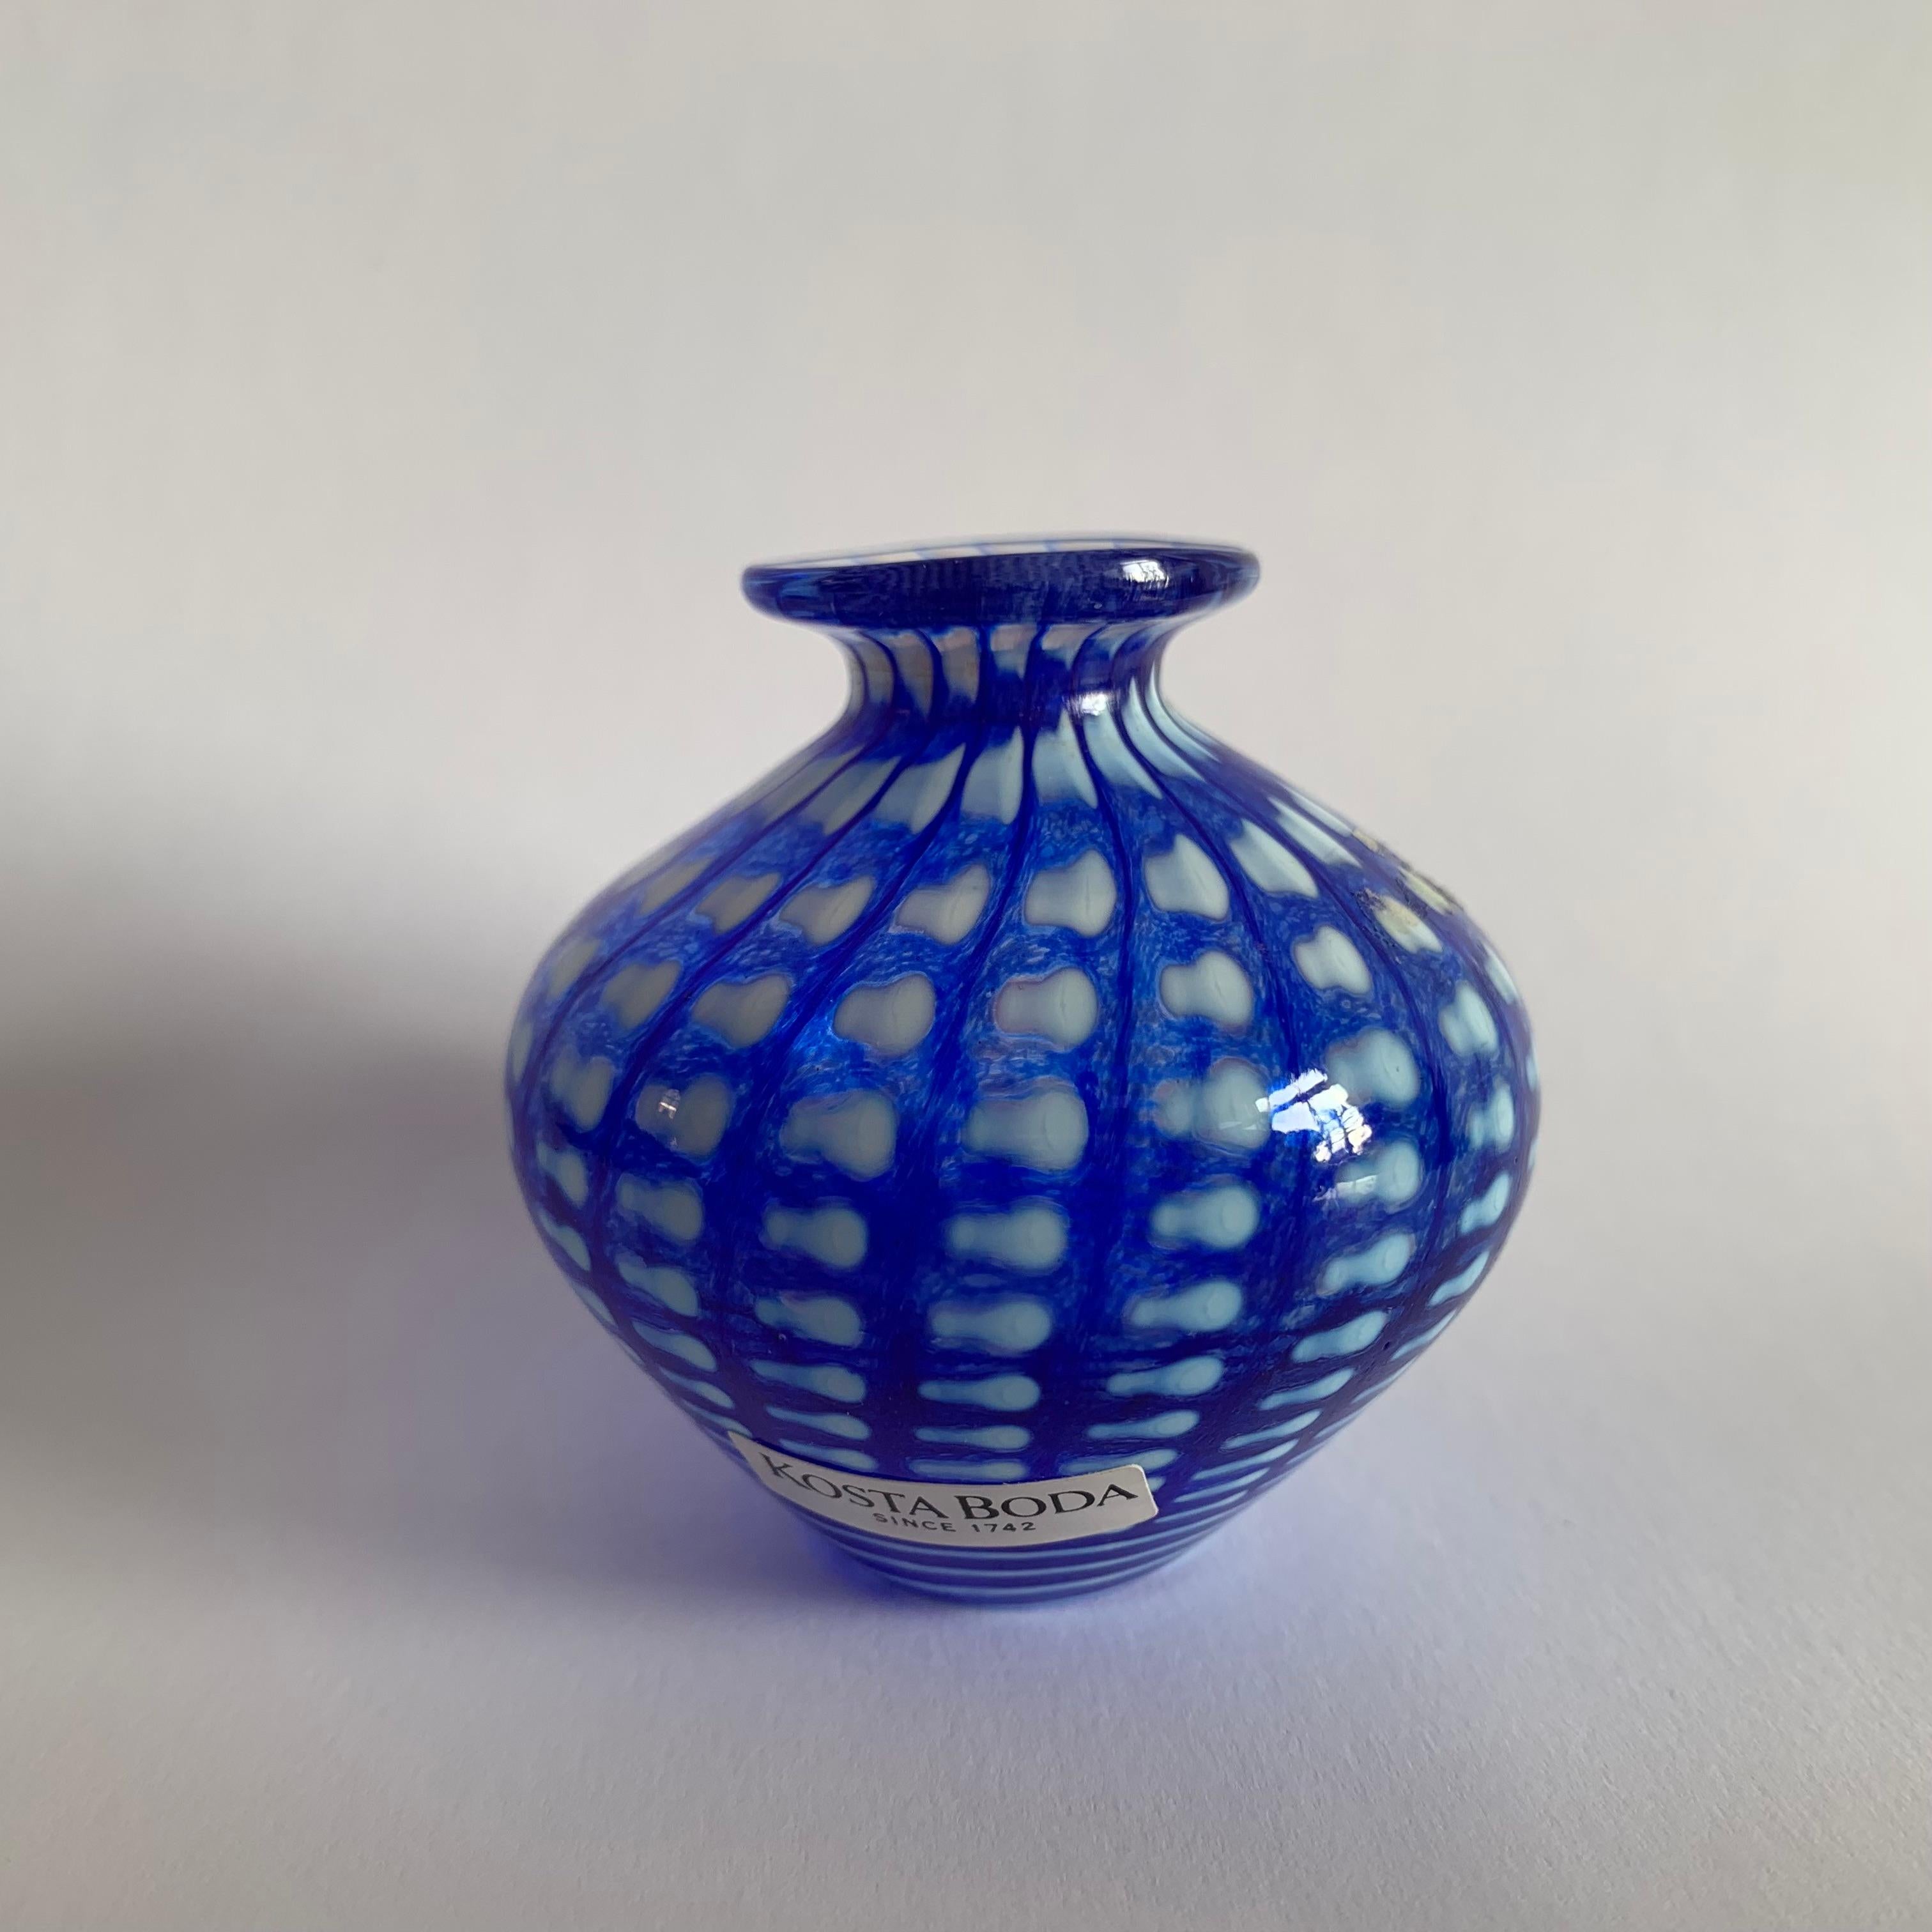 Bertil Vallien for Kosta Boda Miniature vase, 1990s.